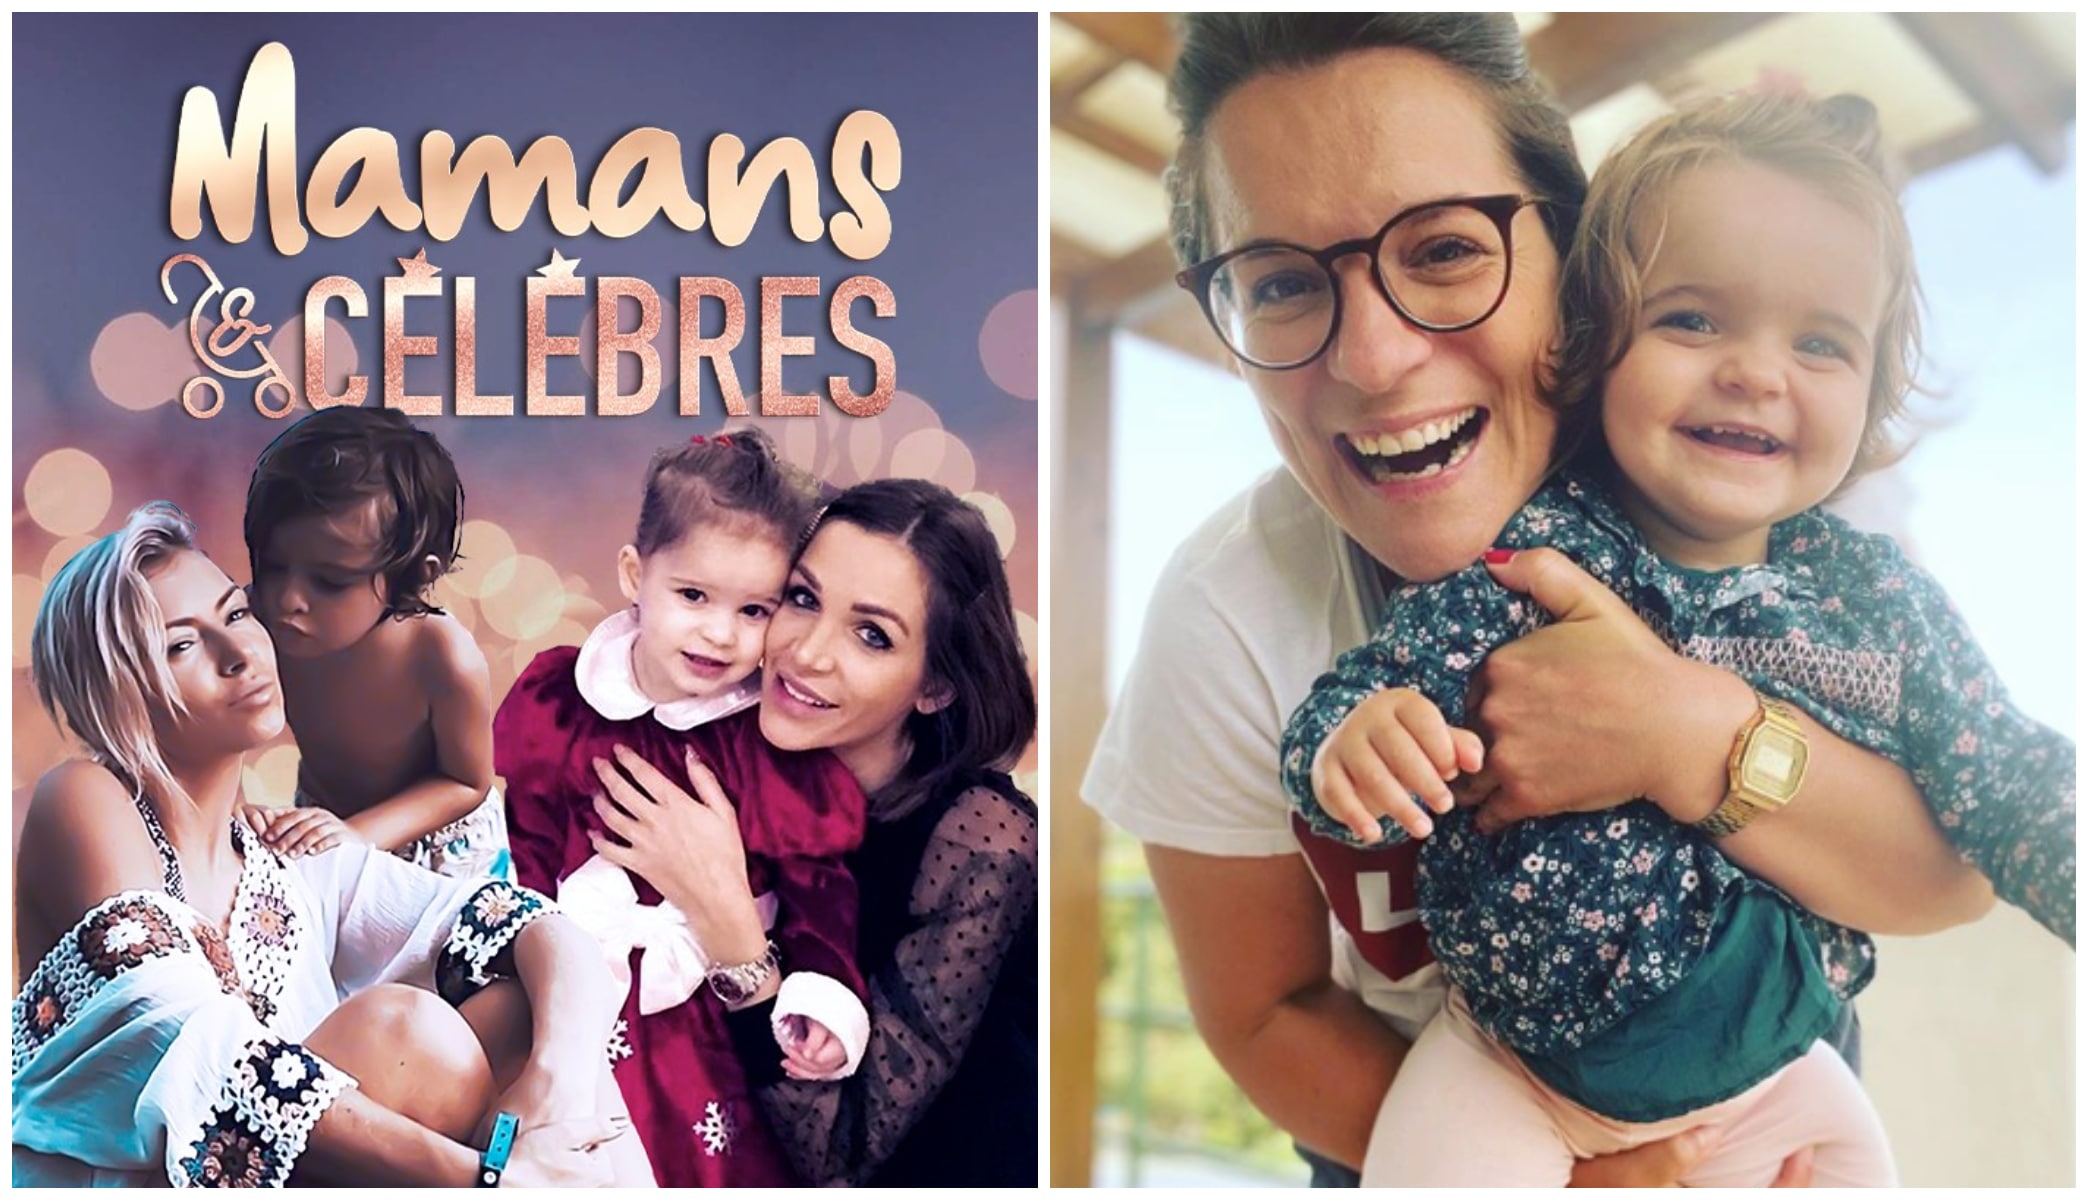 Mamans & Célèbres 3 : une candidate emblématique de télé-réalité rejoindrait le casting !